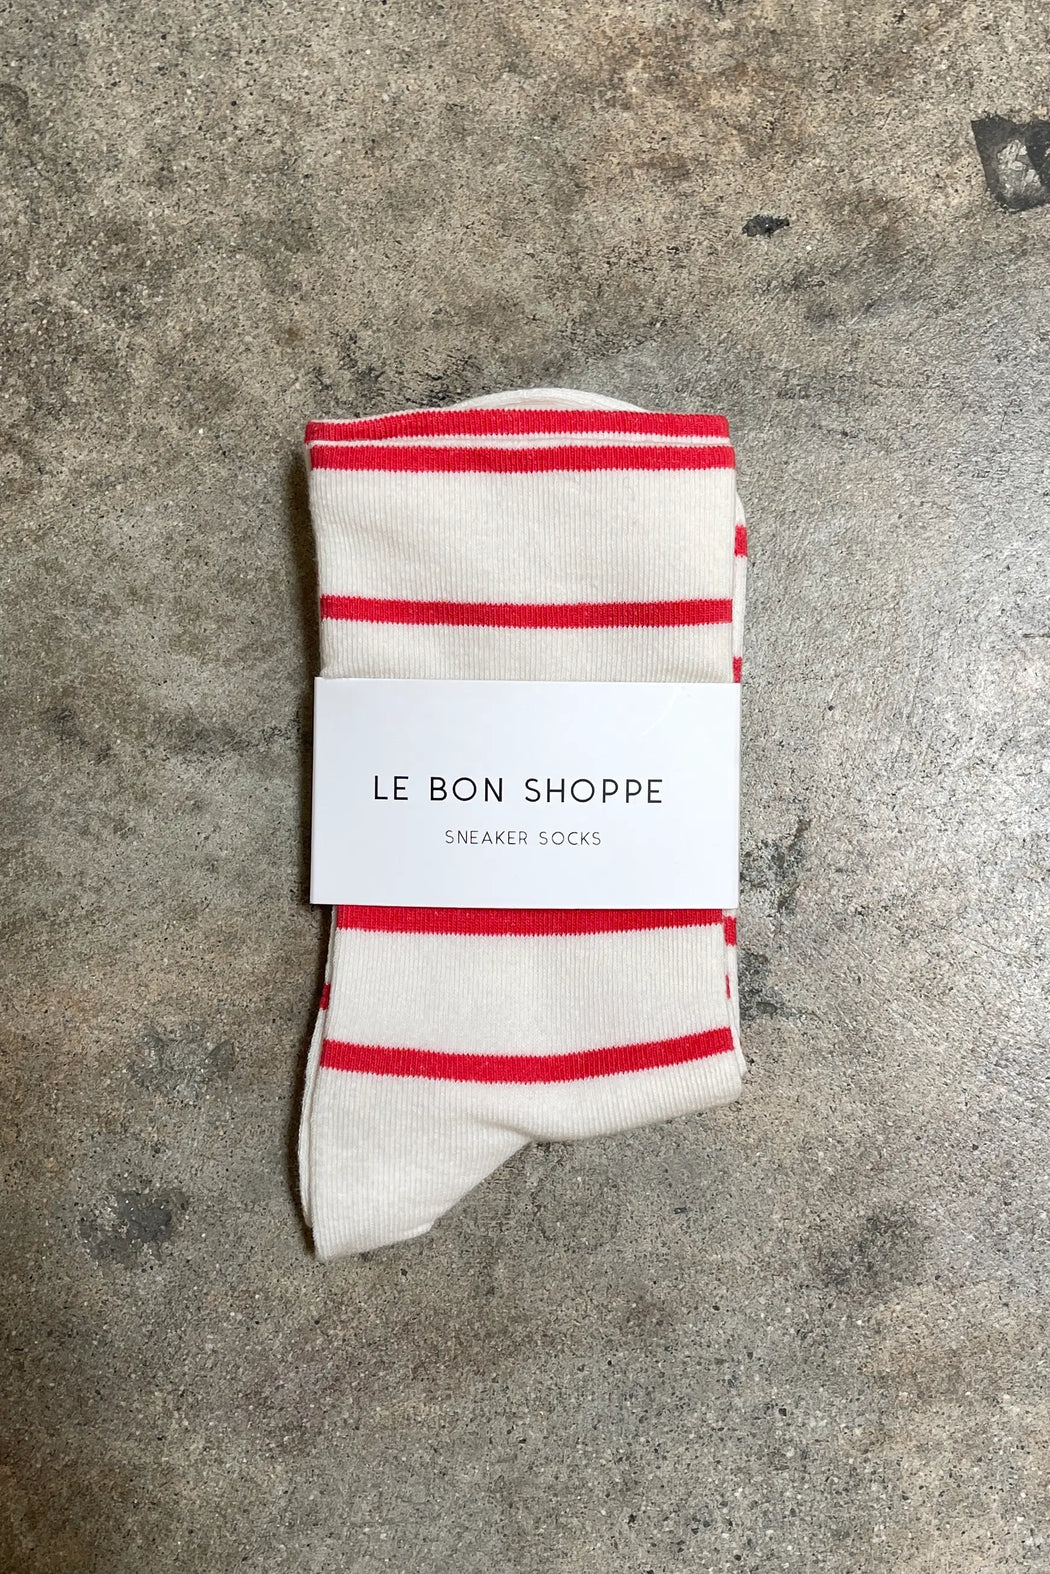 Le Bon Shoppe - Wally Socks - Candy Cane